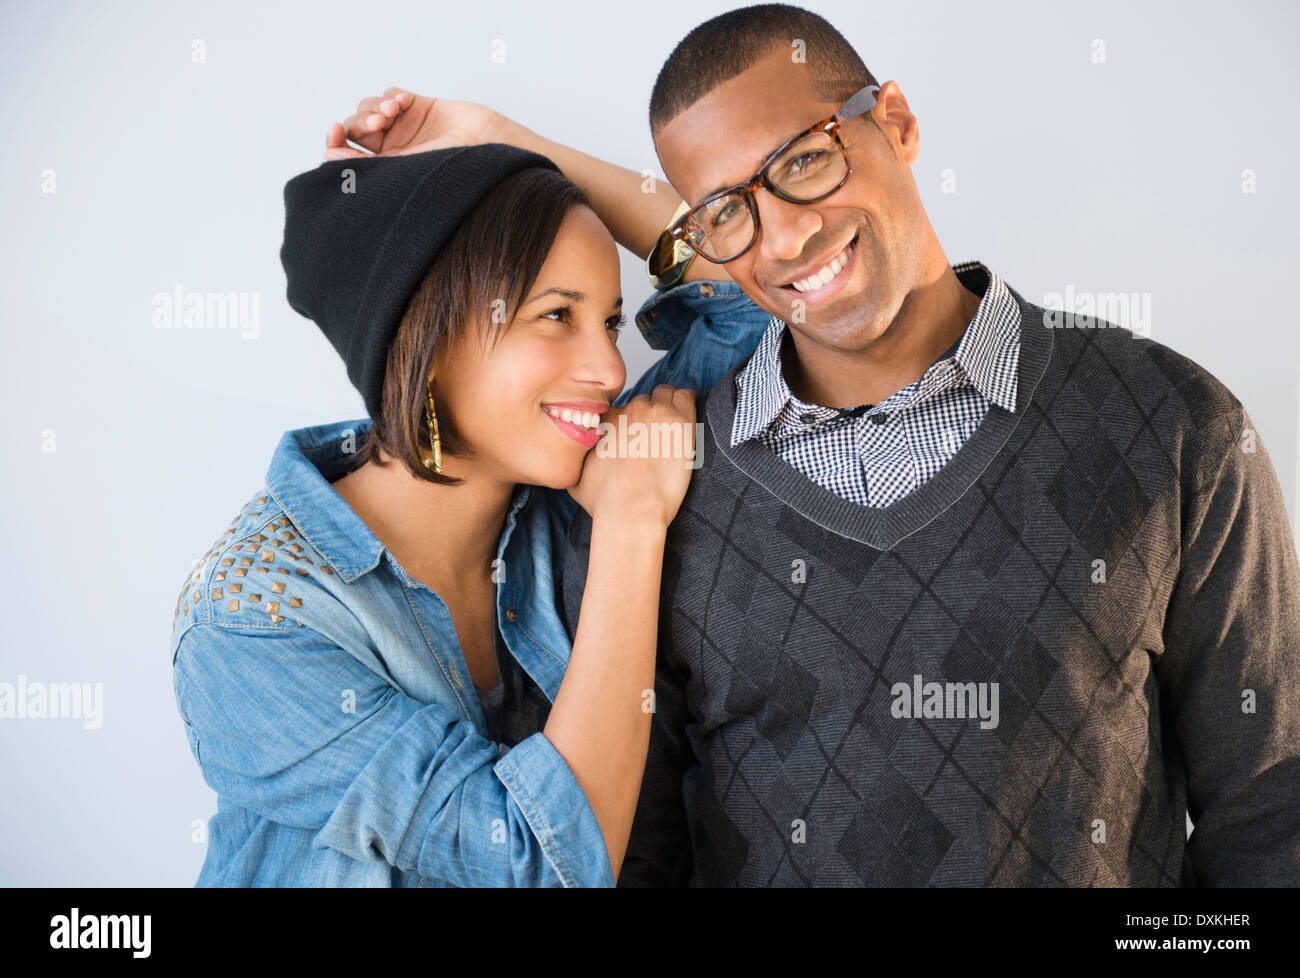 Portrait of smiling couple Banque D'Images